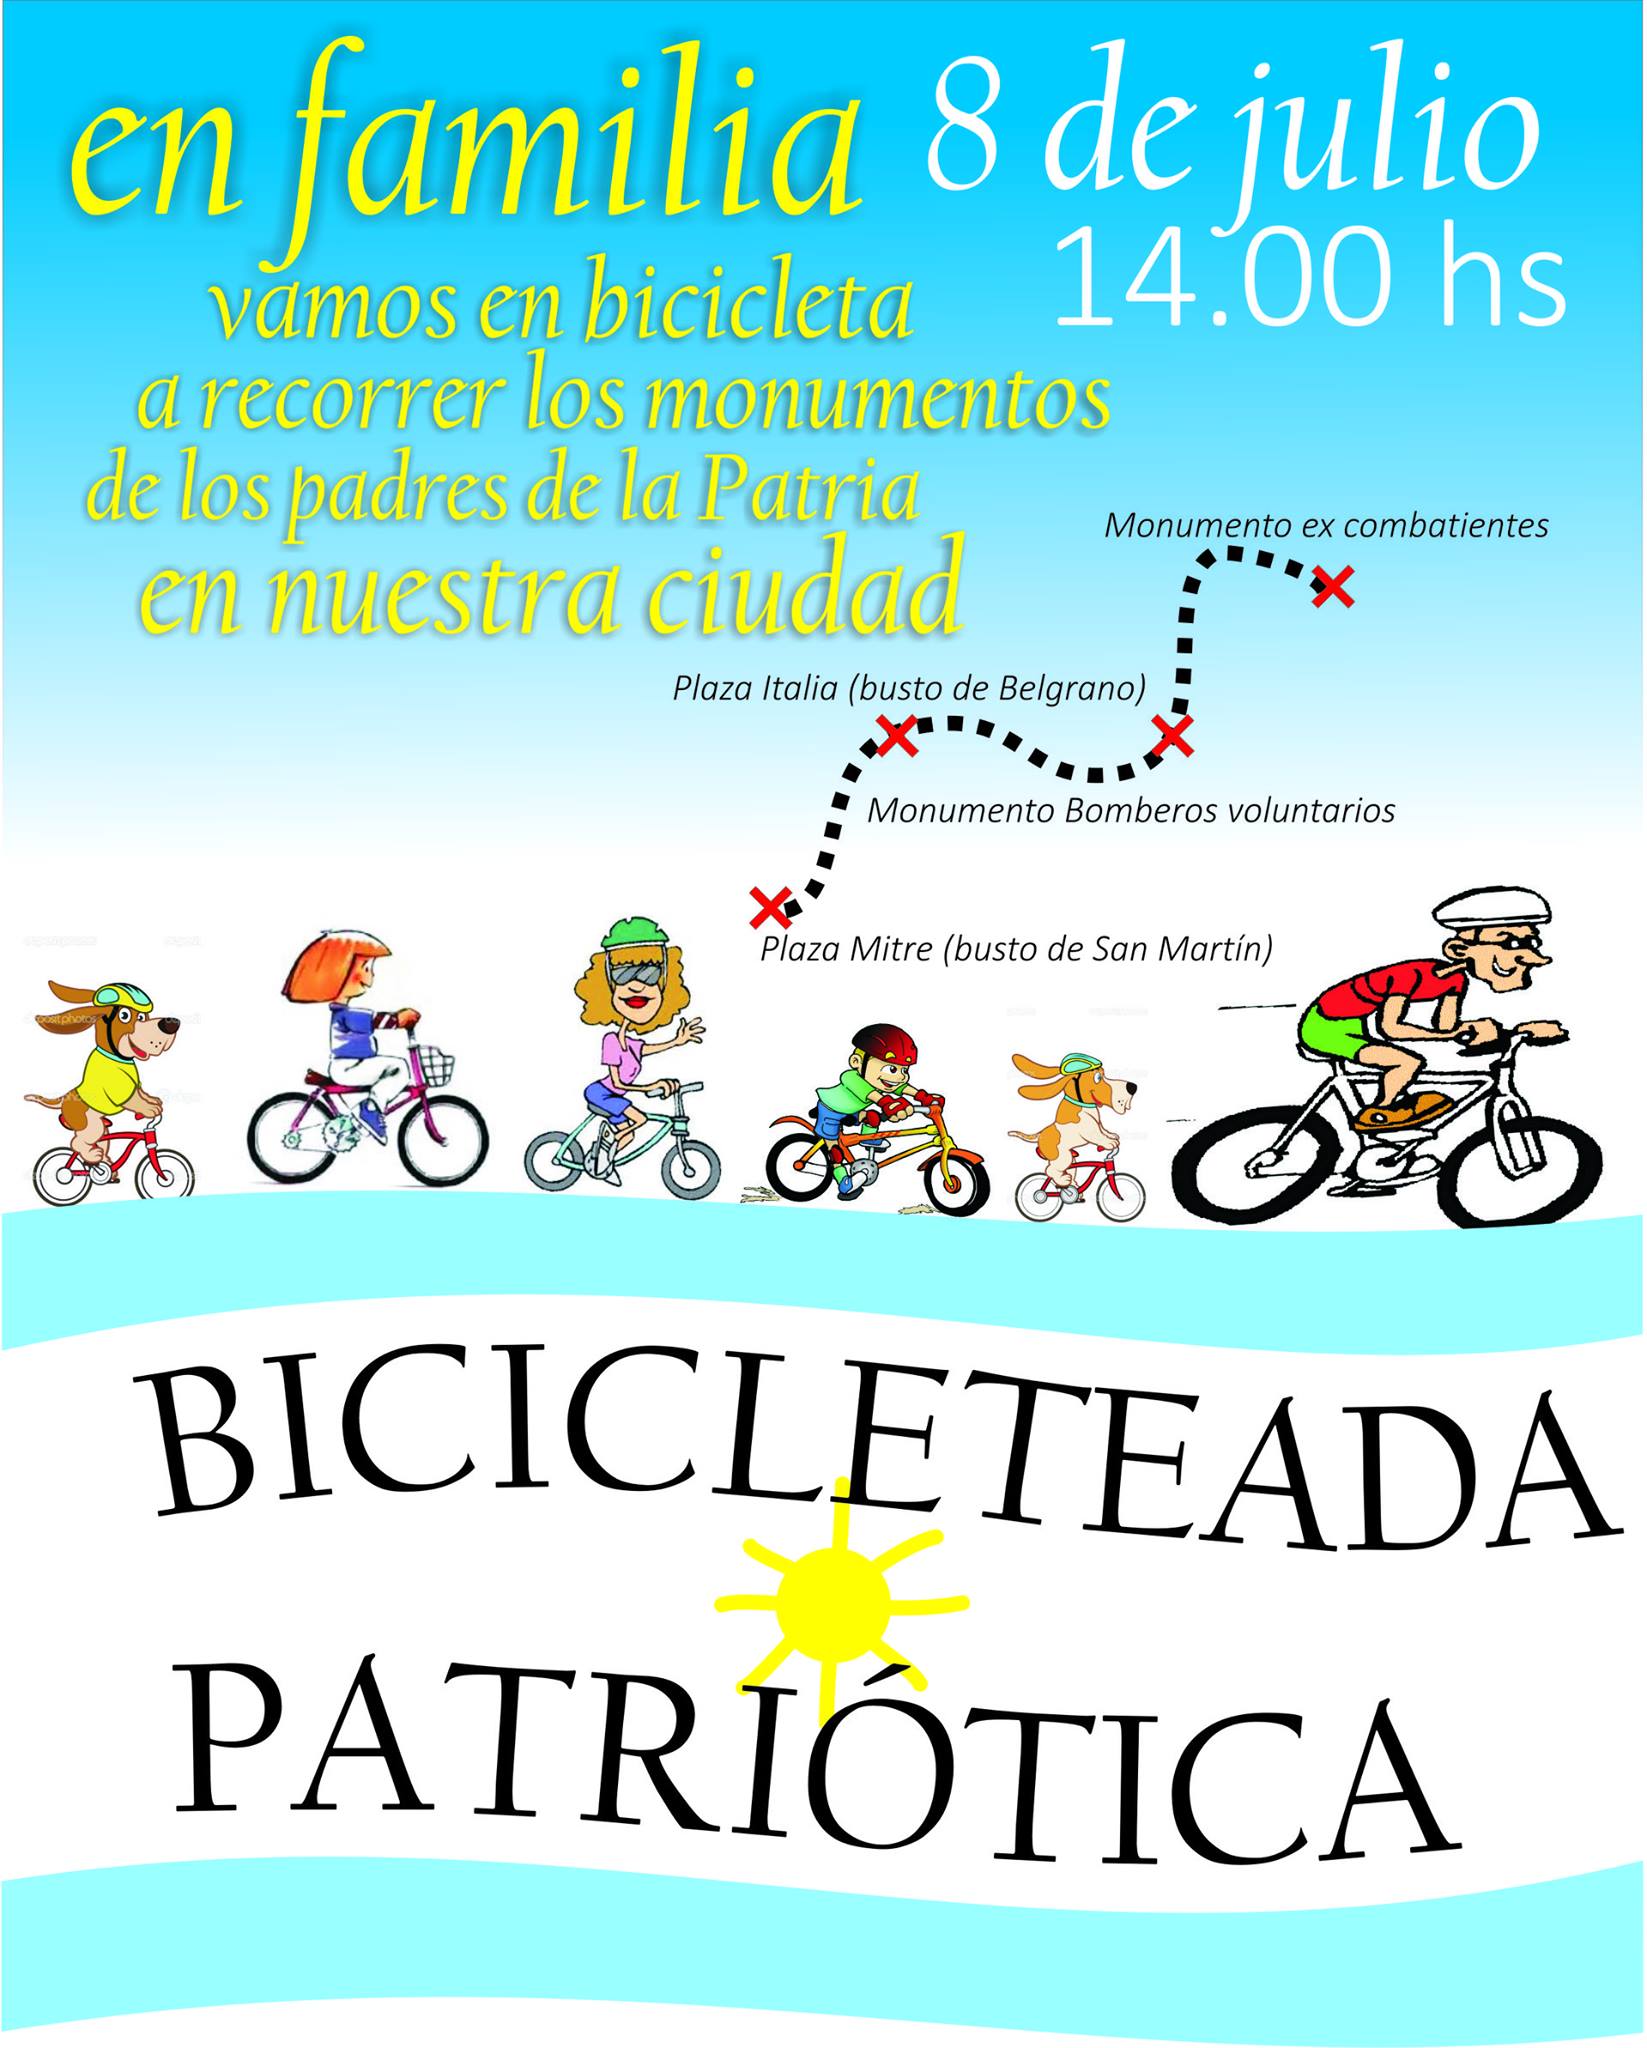 8 de julio: Bicicleteada Patriótica en Zárate